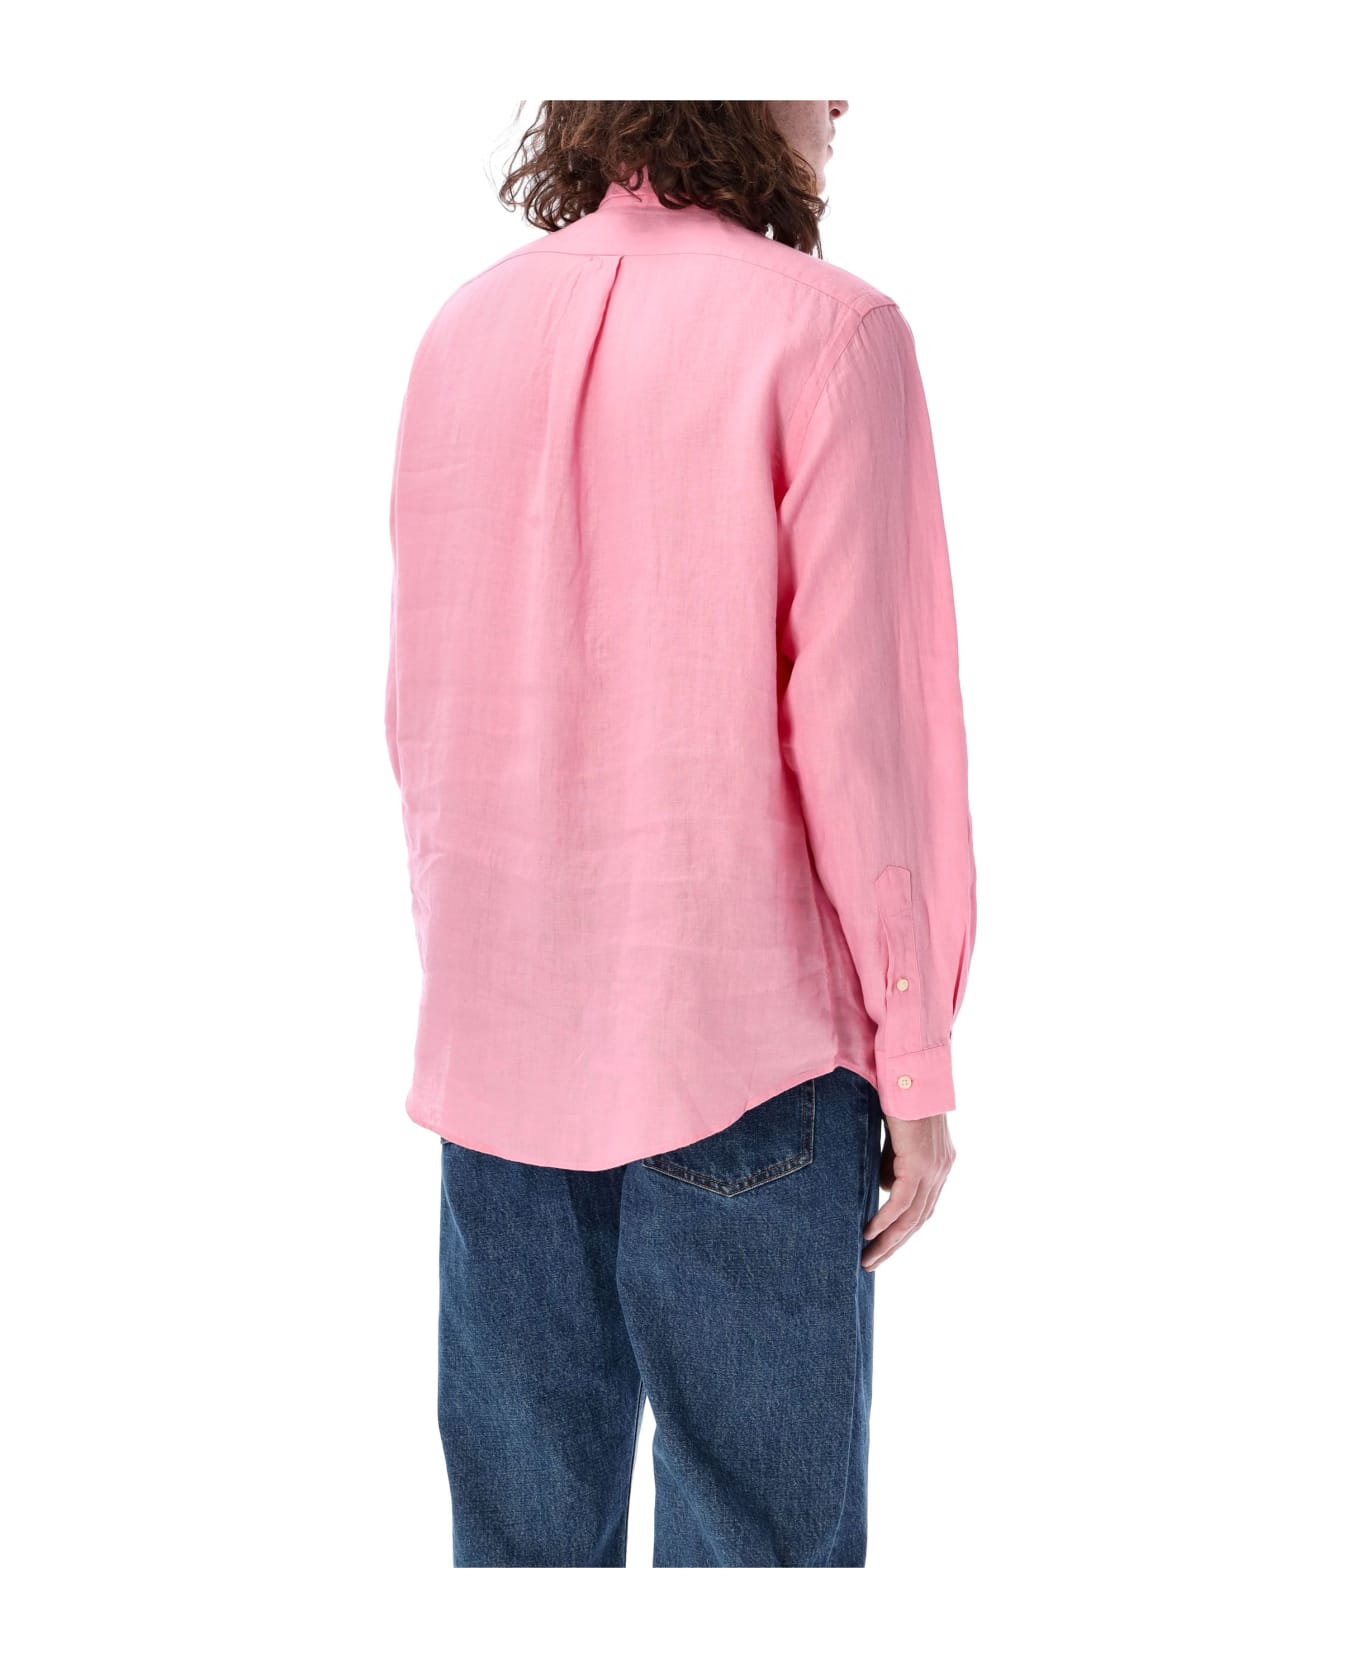 Ralph Lauren Custom Fit Shirt - Bright Pink